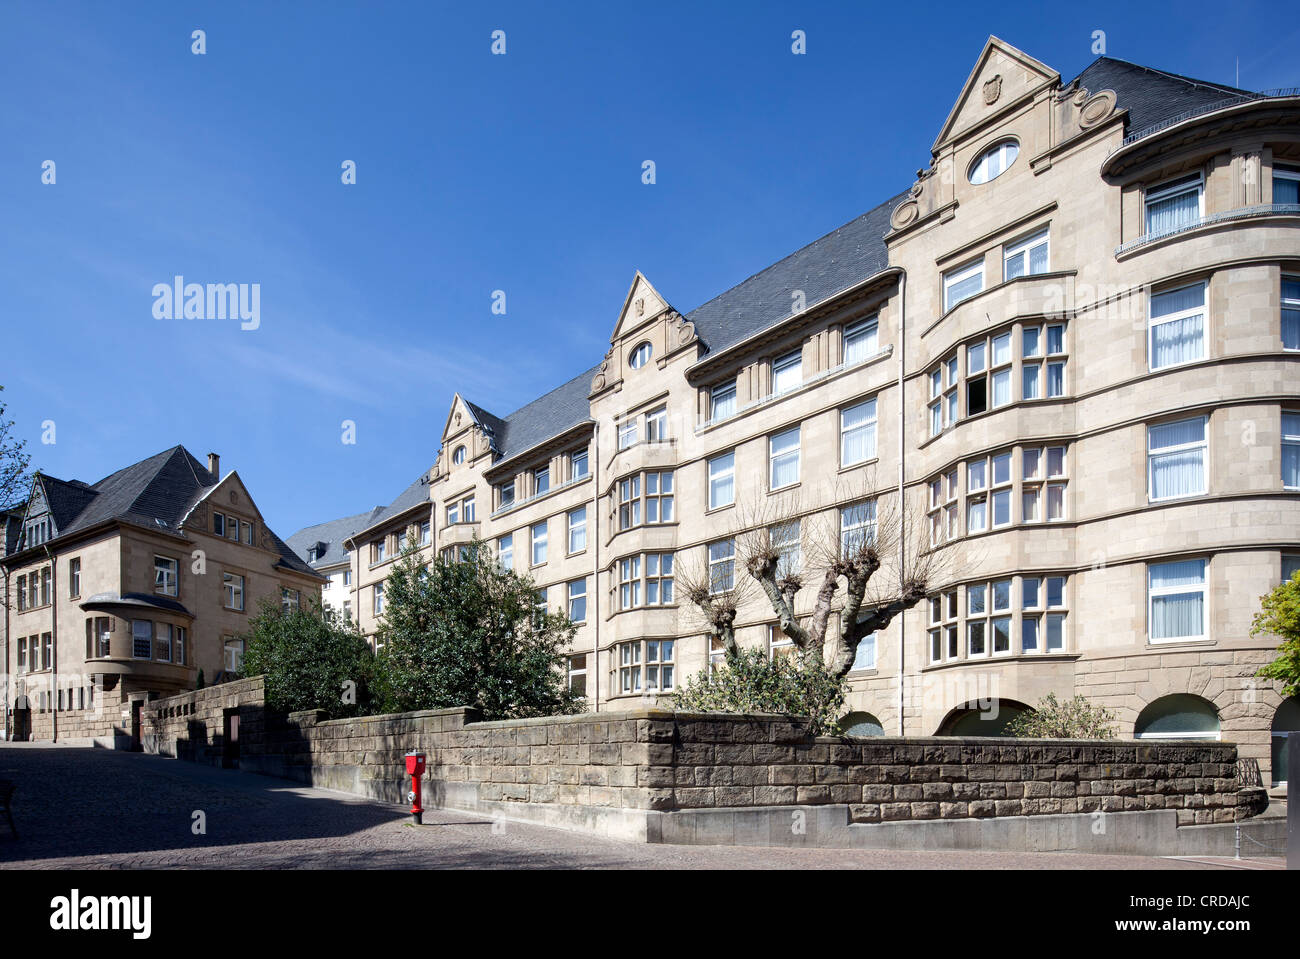 Landesbad, historische Kurstadt, Klinik für Rheumatologie, Burtscheid District, Aachen, Nordrhein-Westfalen, PublicGround Stockfoto